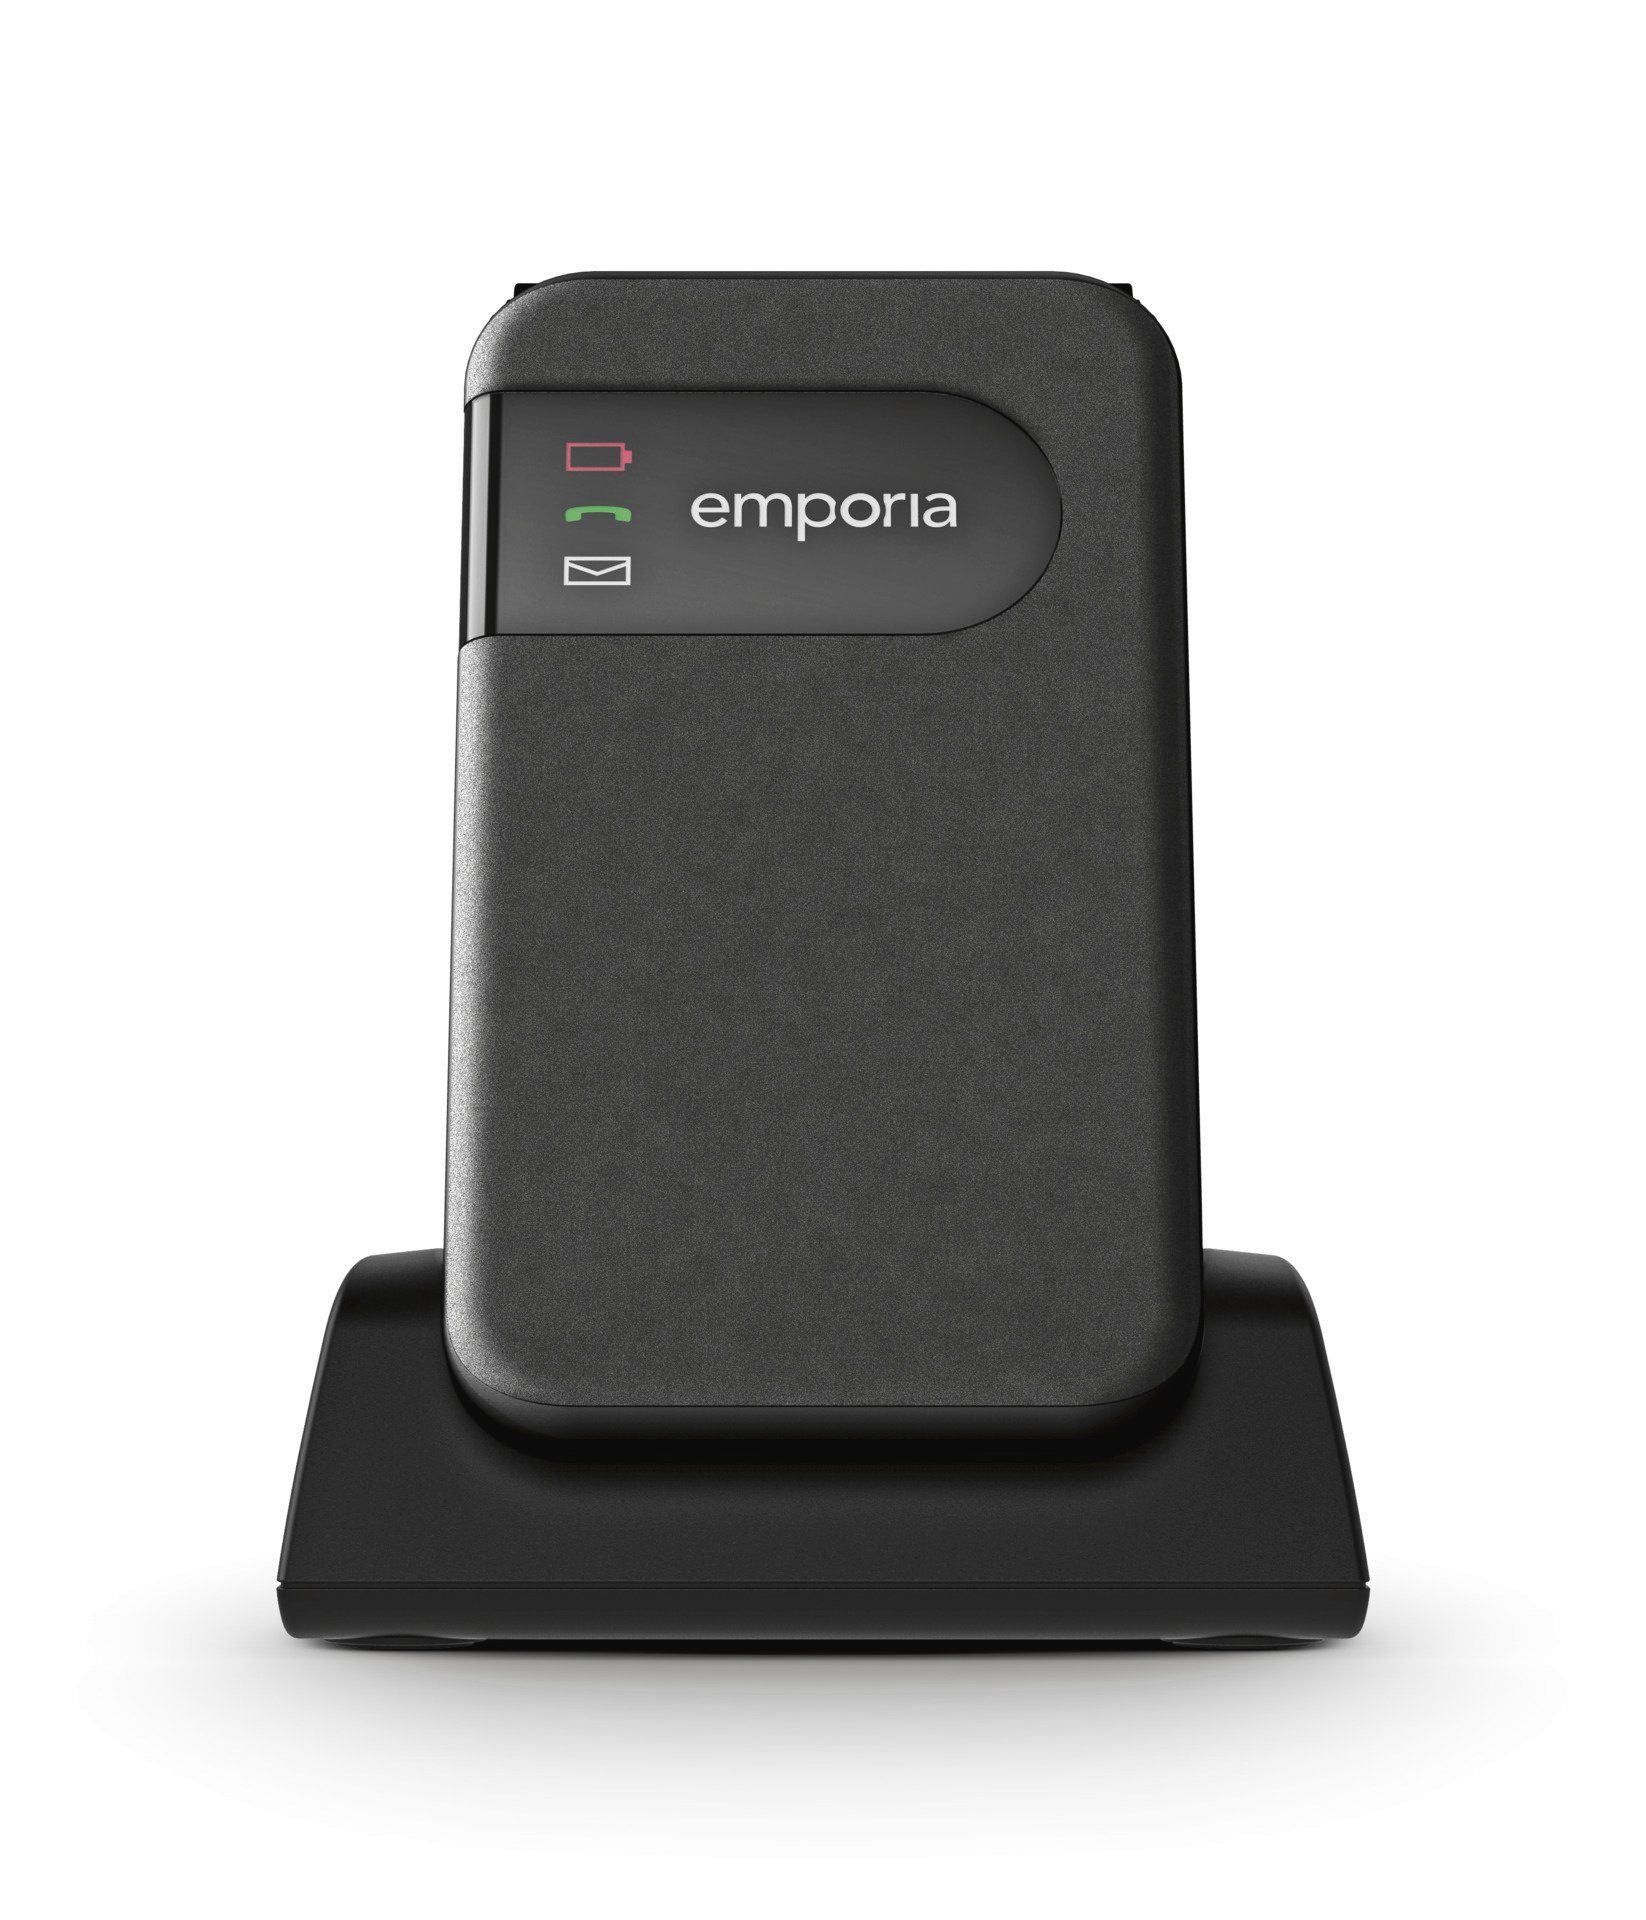 Speicherplatz) Emporia SIMPLICITY GB Smartphone cm/2,8 V227-2G 0,064 Zoll, (7,1